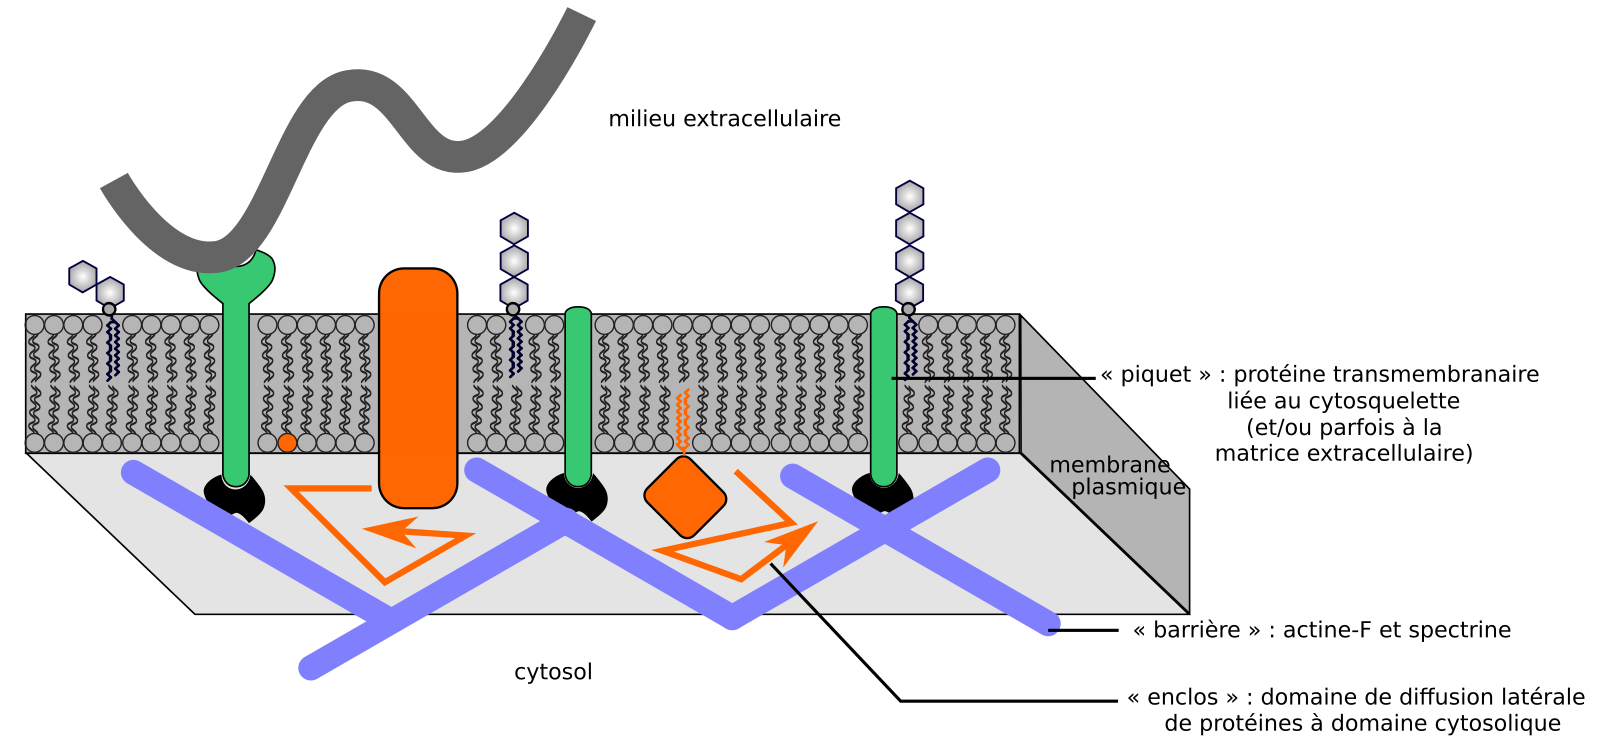 Les membranes biologiques : des structures dynamiques